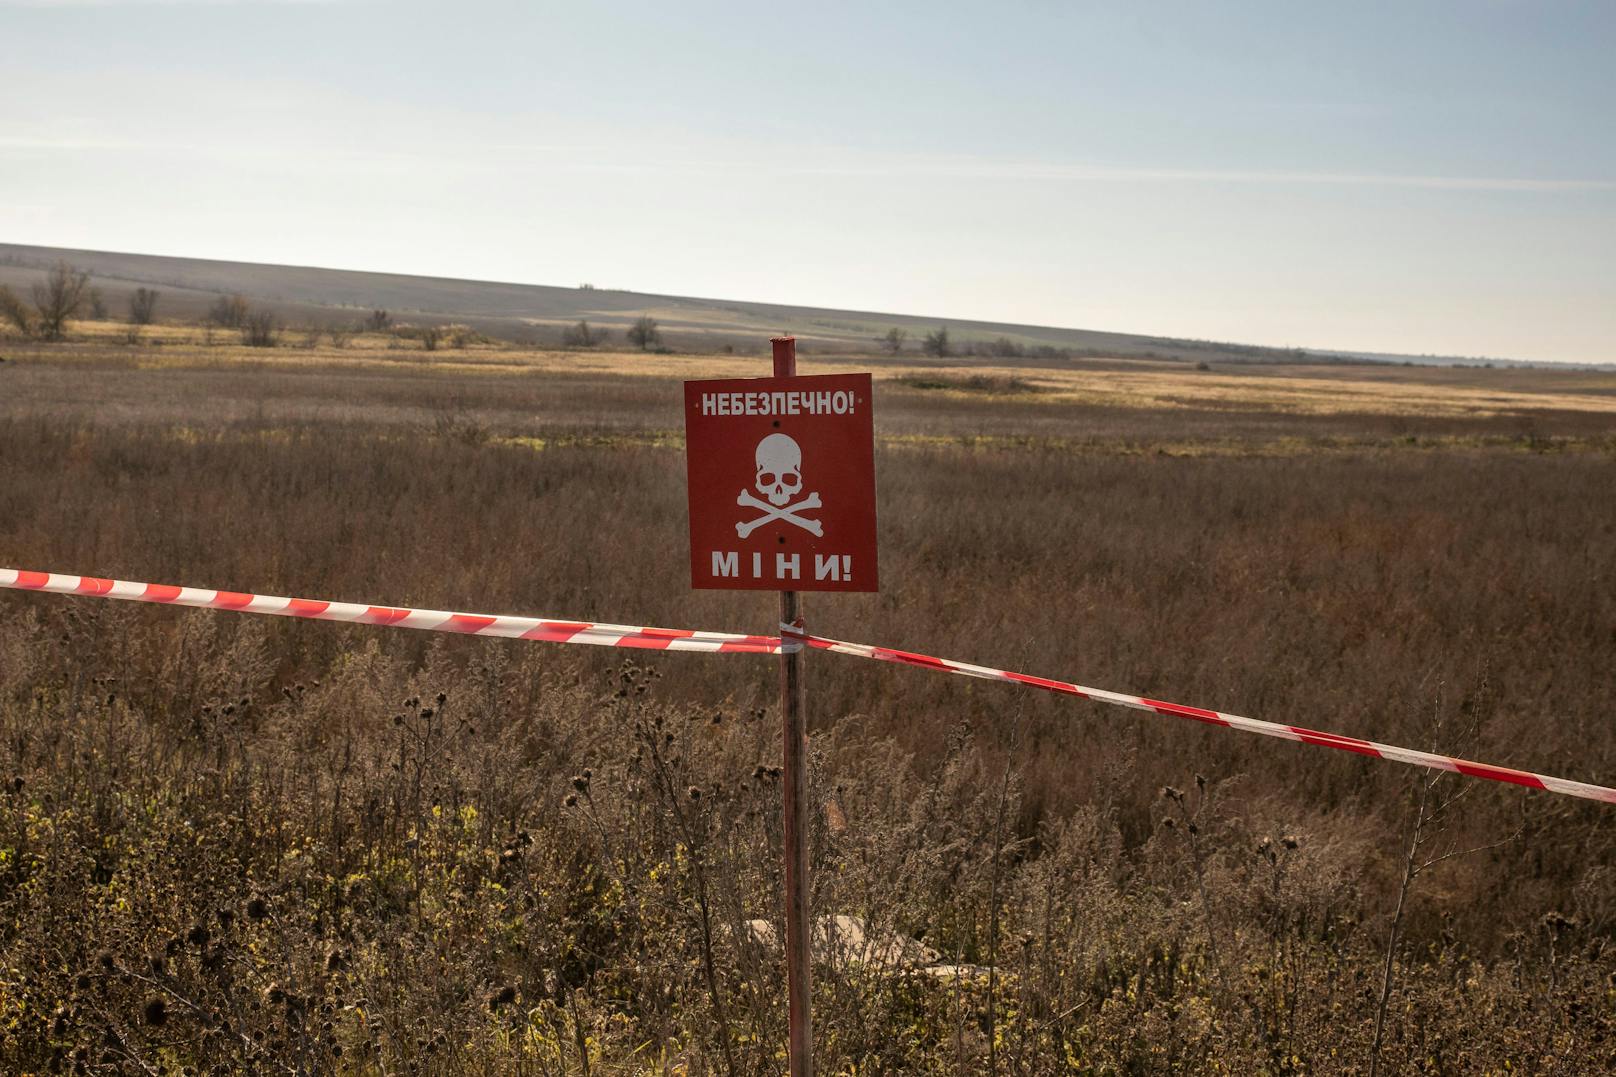 Doch auch ohne aktives Kampfgeschehen sind die ukrainischen Felder eine Todesfalle: überall gibt es riesige Minenfelder.